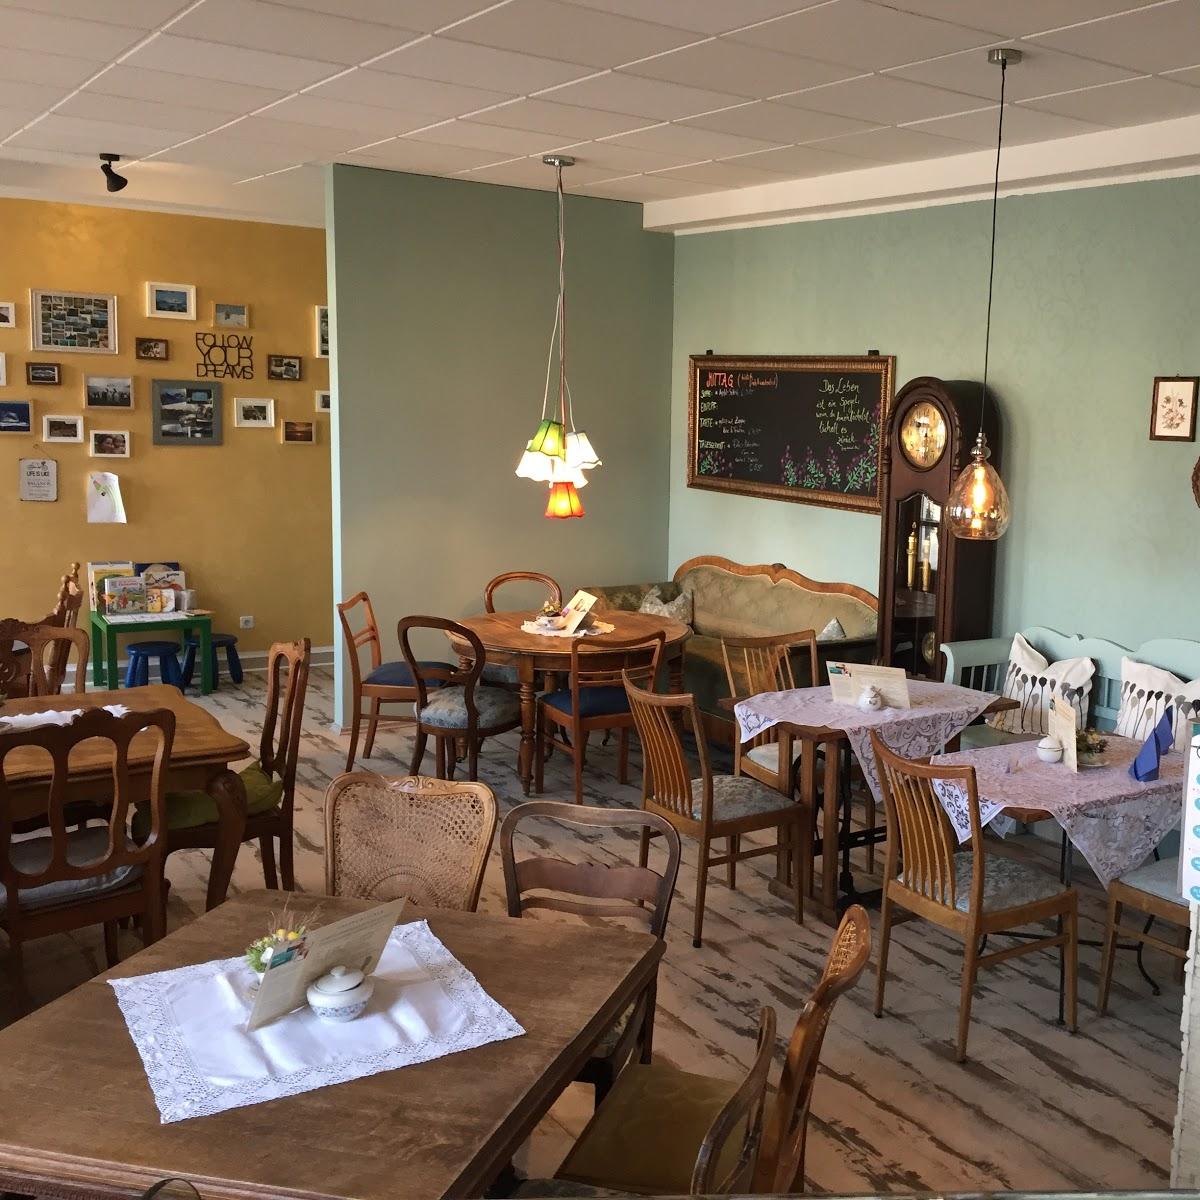 Restaurant "Carmeleon Café & Bistro" in Beeskow